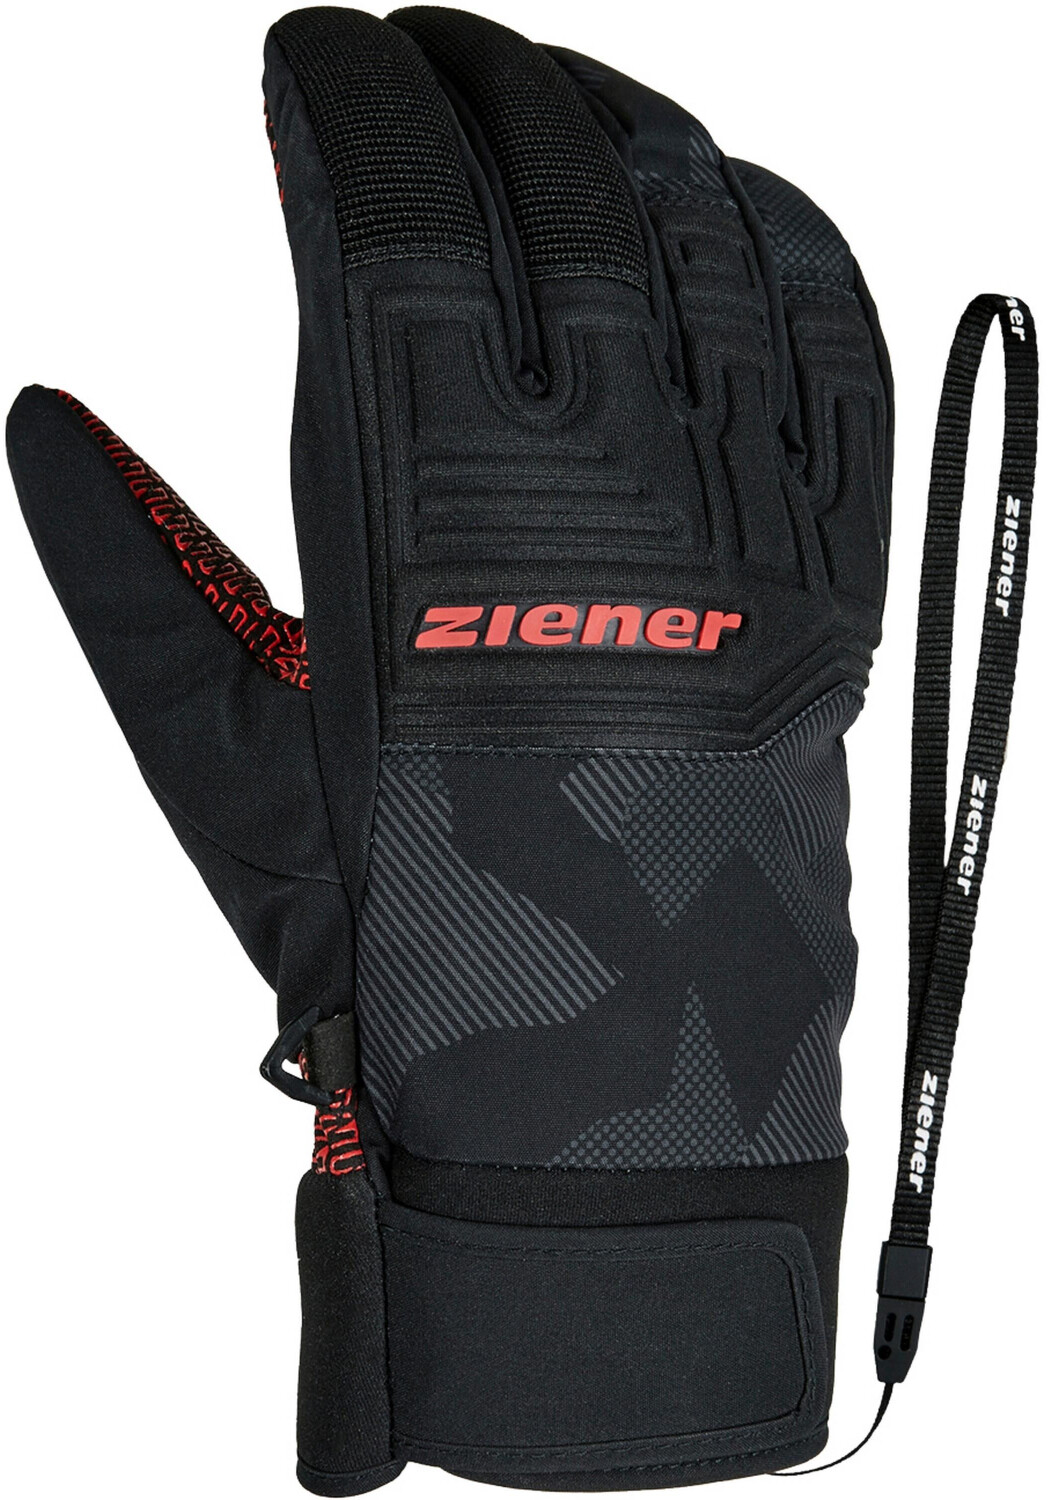 Ziener Garim AS Glove Ski Alpine ab 39,99 € | Preisvergleich bei